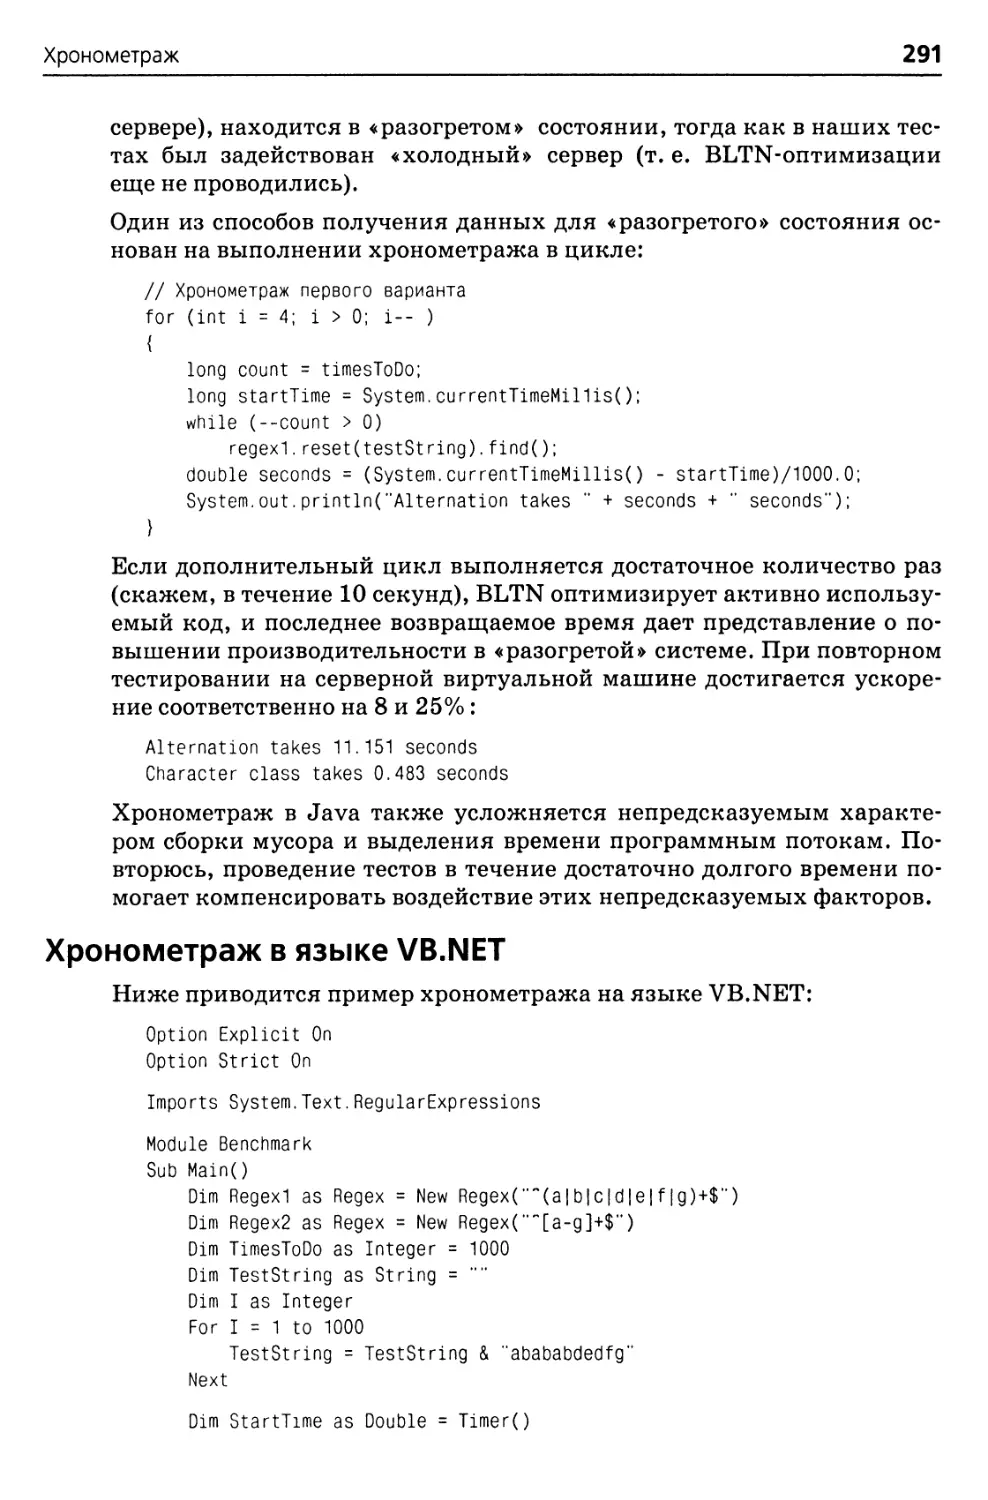 Хронометраж в языке VB.NET